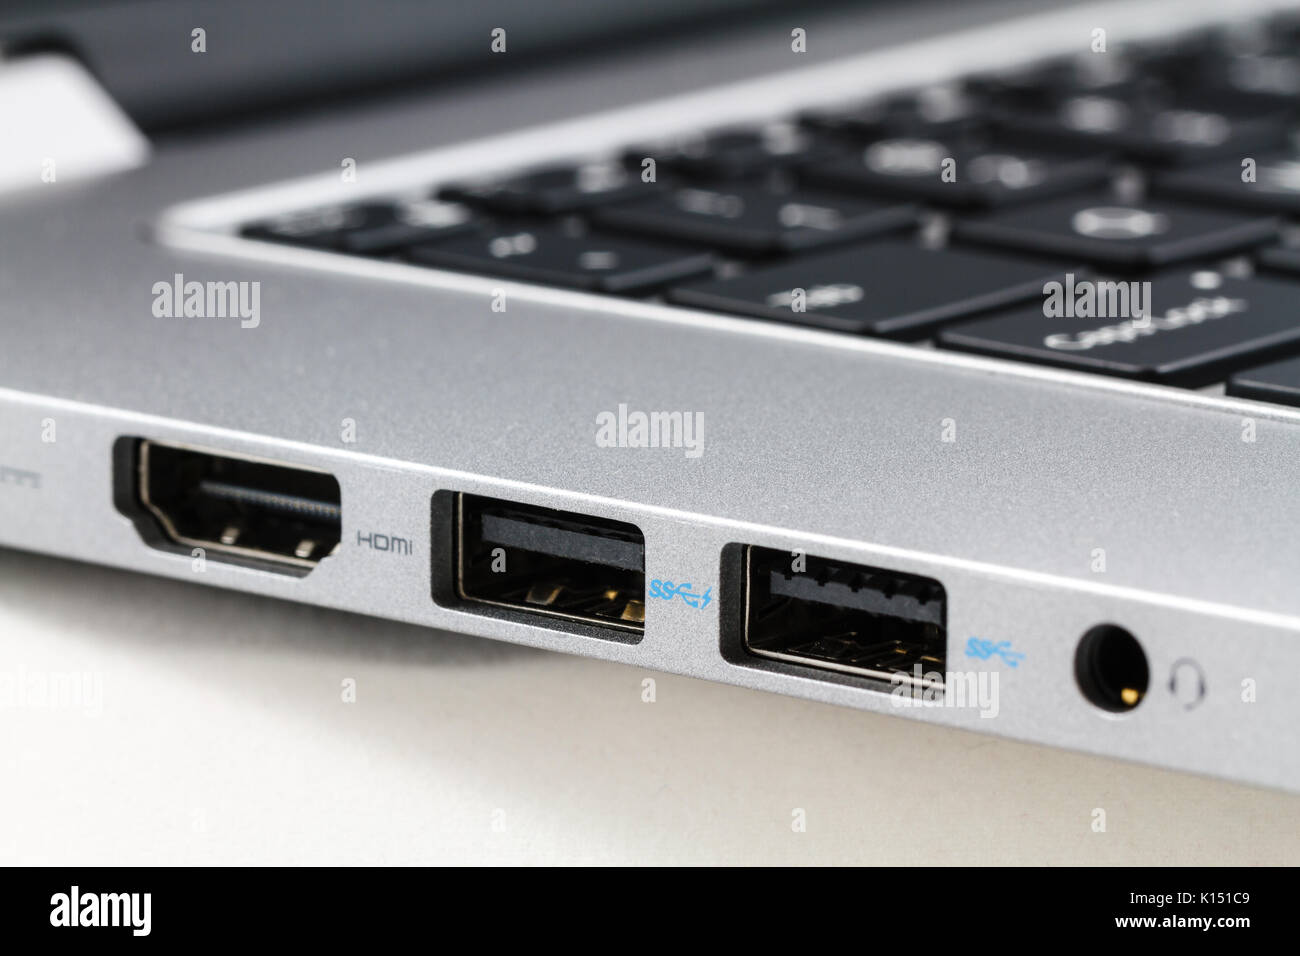 Puerto HDMI y USB en el ordenador portátil, Closeup. Foto de stock